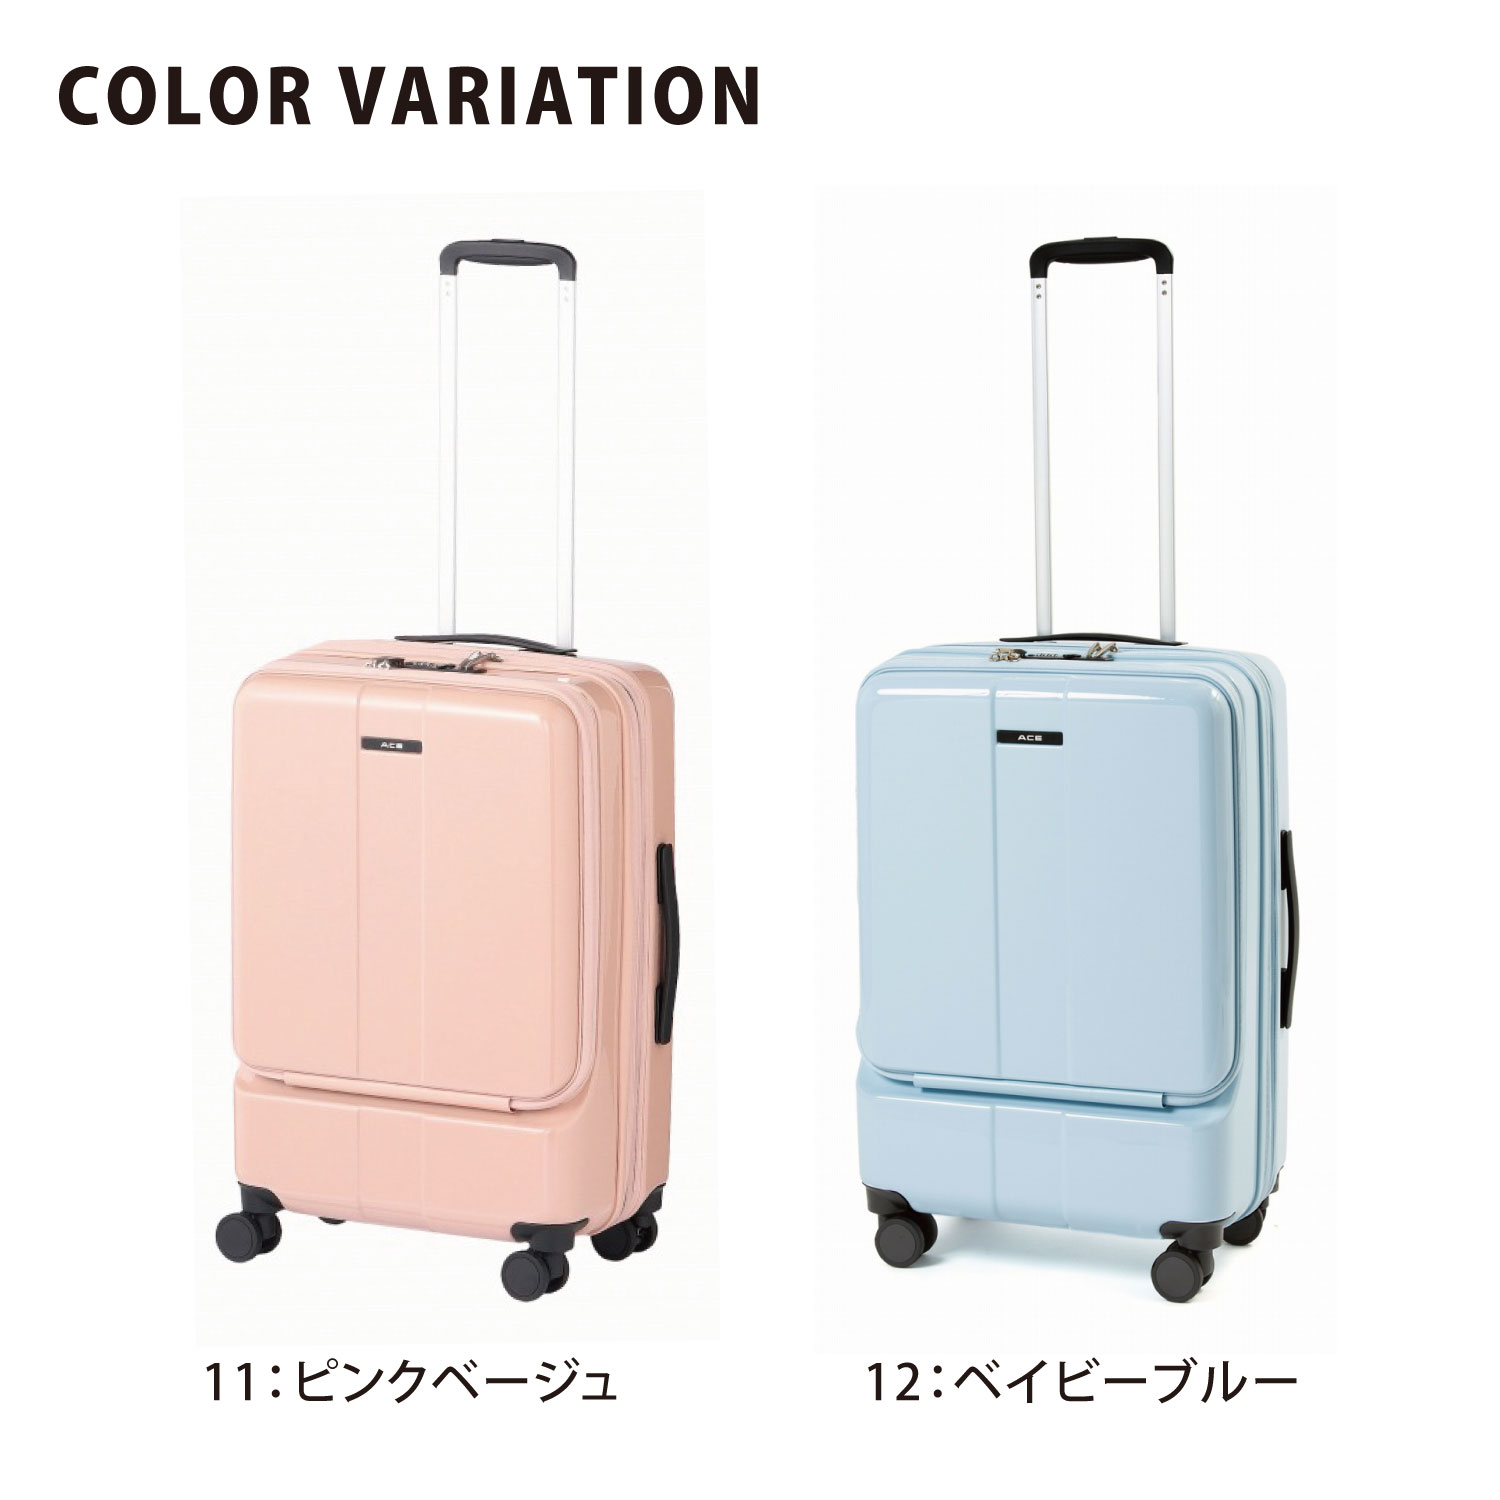 彡新品彡高級 エース スーツケース キャリーケース mサイズ 双輪